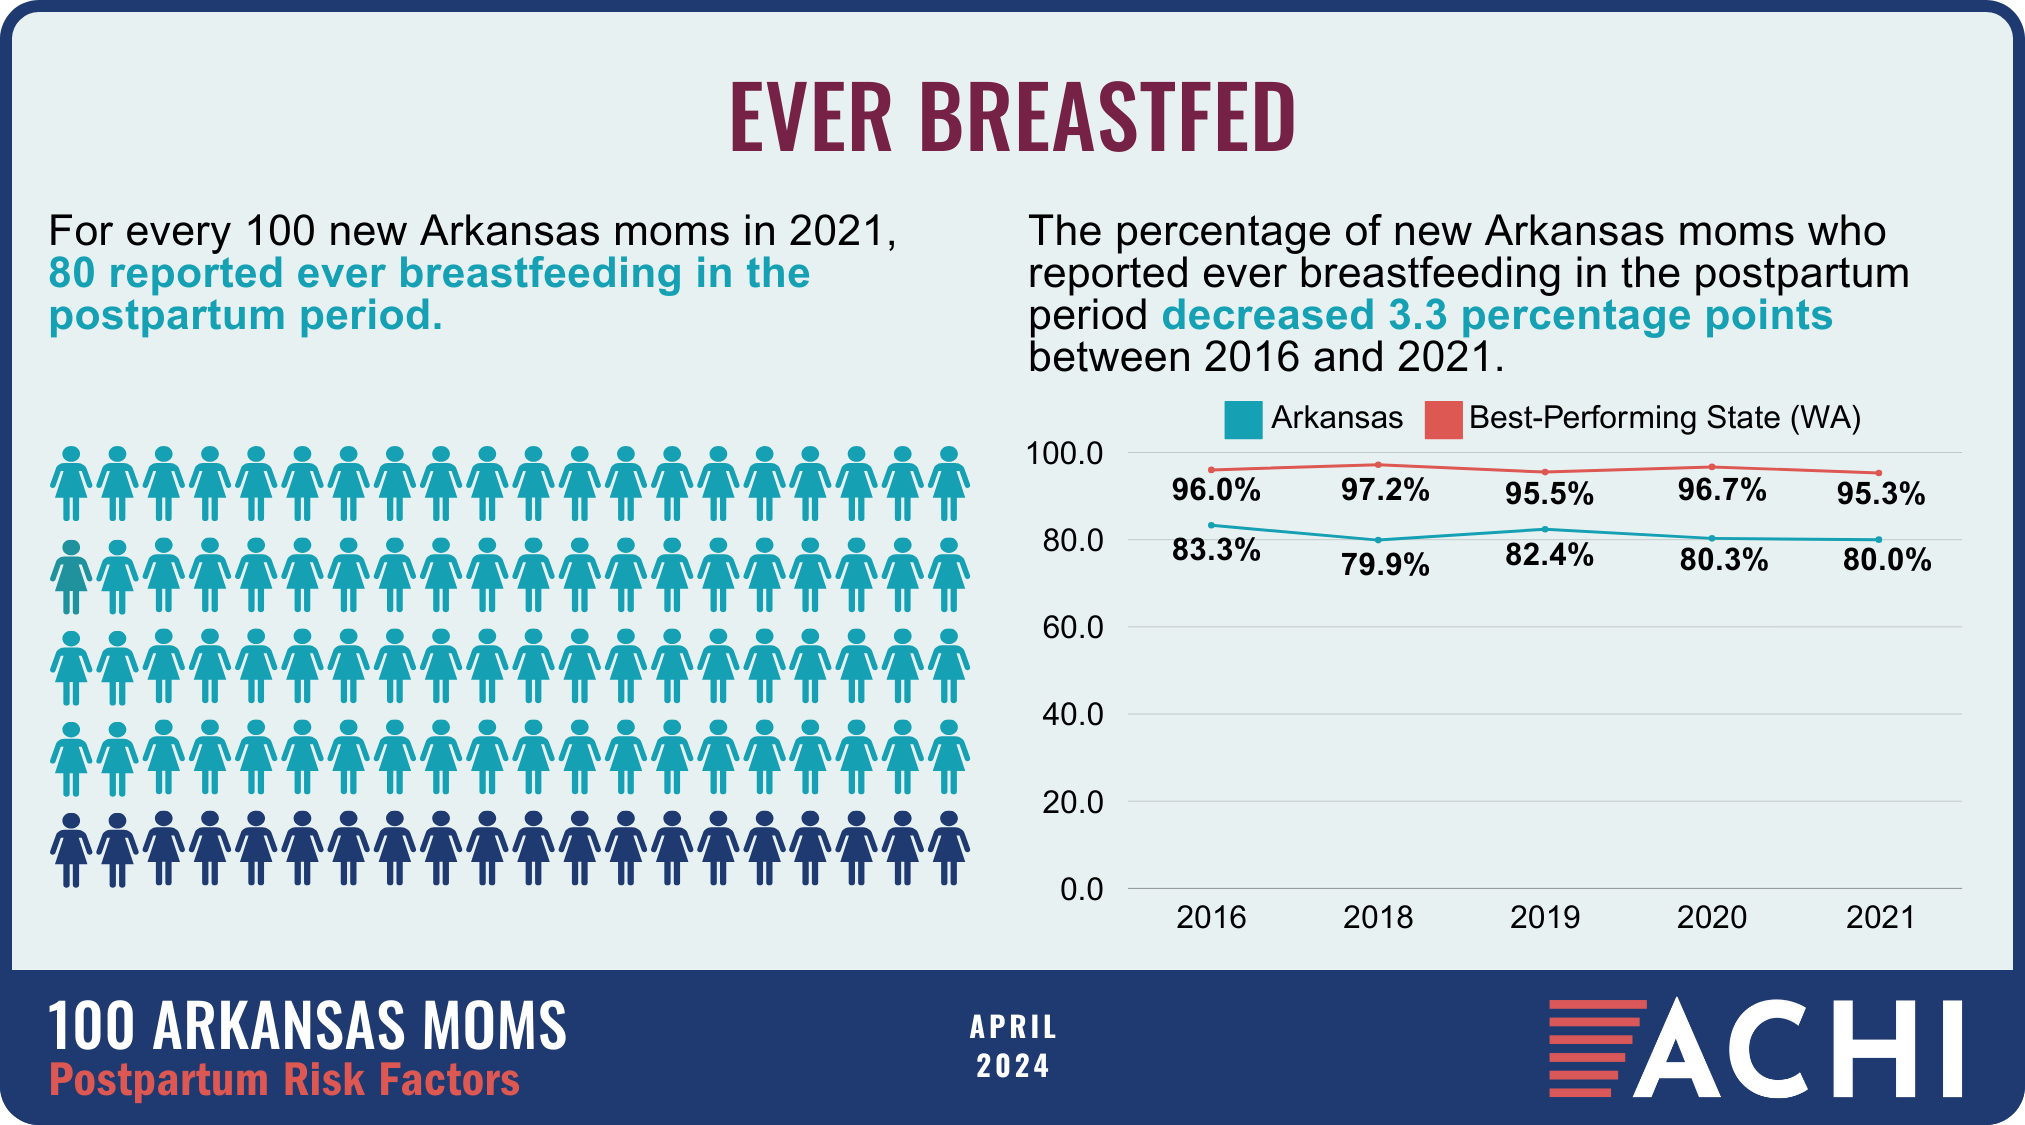 26_240418_100 Arkansas Moms_Postpartum Risk Factors_Ever Breastfed